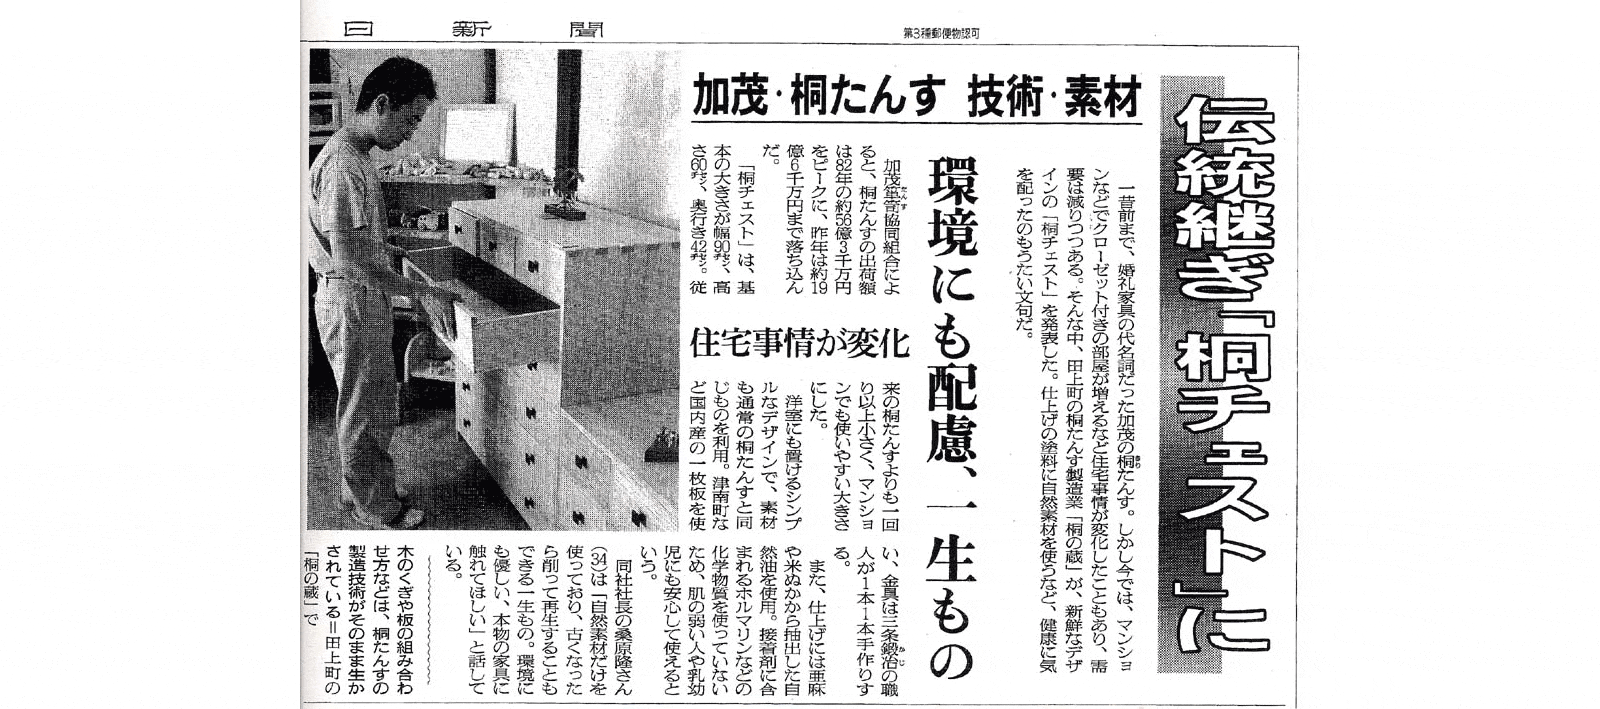 2002年7月7日 朝日新聞取材